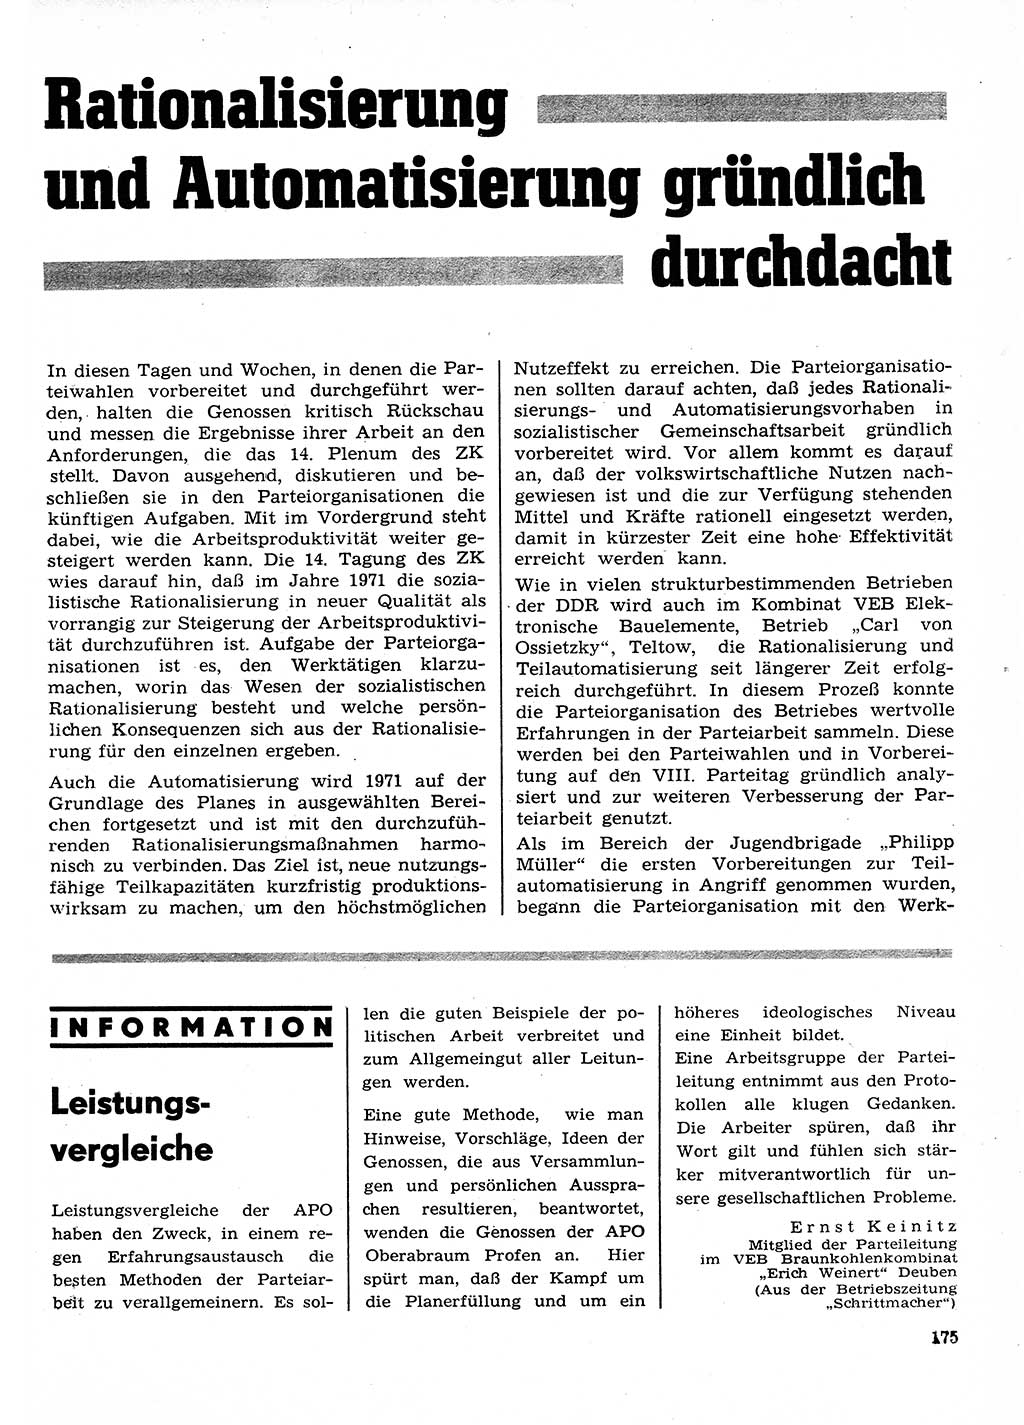 Neuer Weg (NW), Organ des Zentralkomitees (ZK) der SED (Sozialistische Einheitspartei Deutschlands) für Fragen des Parteilebens, 26. Jahrgang [Deutsche Demokratische Republik (DDR)] 1971, Seite 175 (NW ZK SED DDR 1971, S. 175)